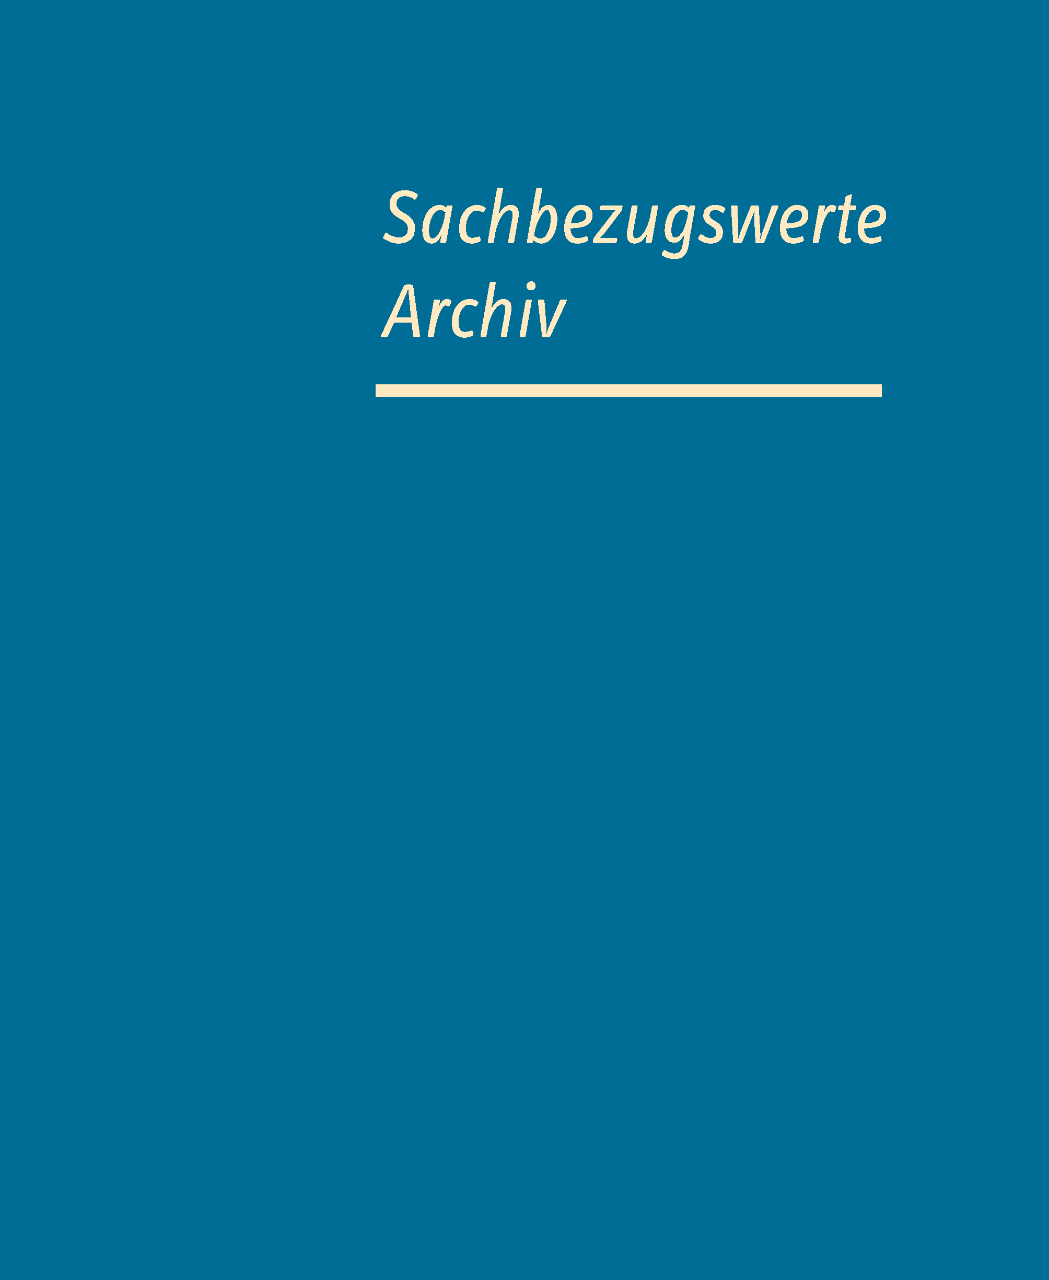 Cover Archiv Sachbezugswerte, helle Schrtift auf blauem Grund